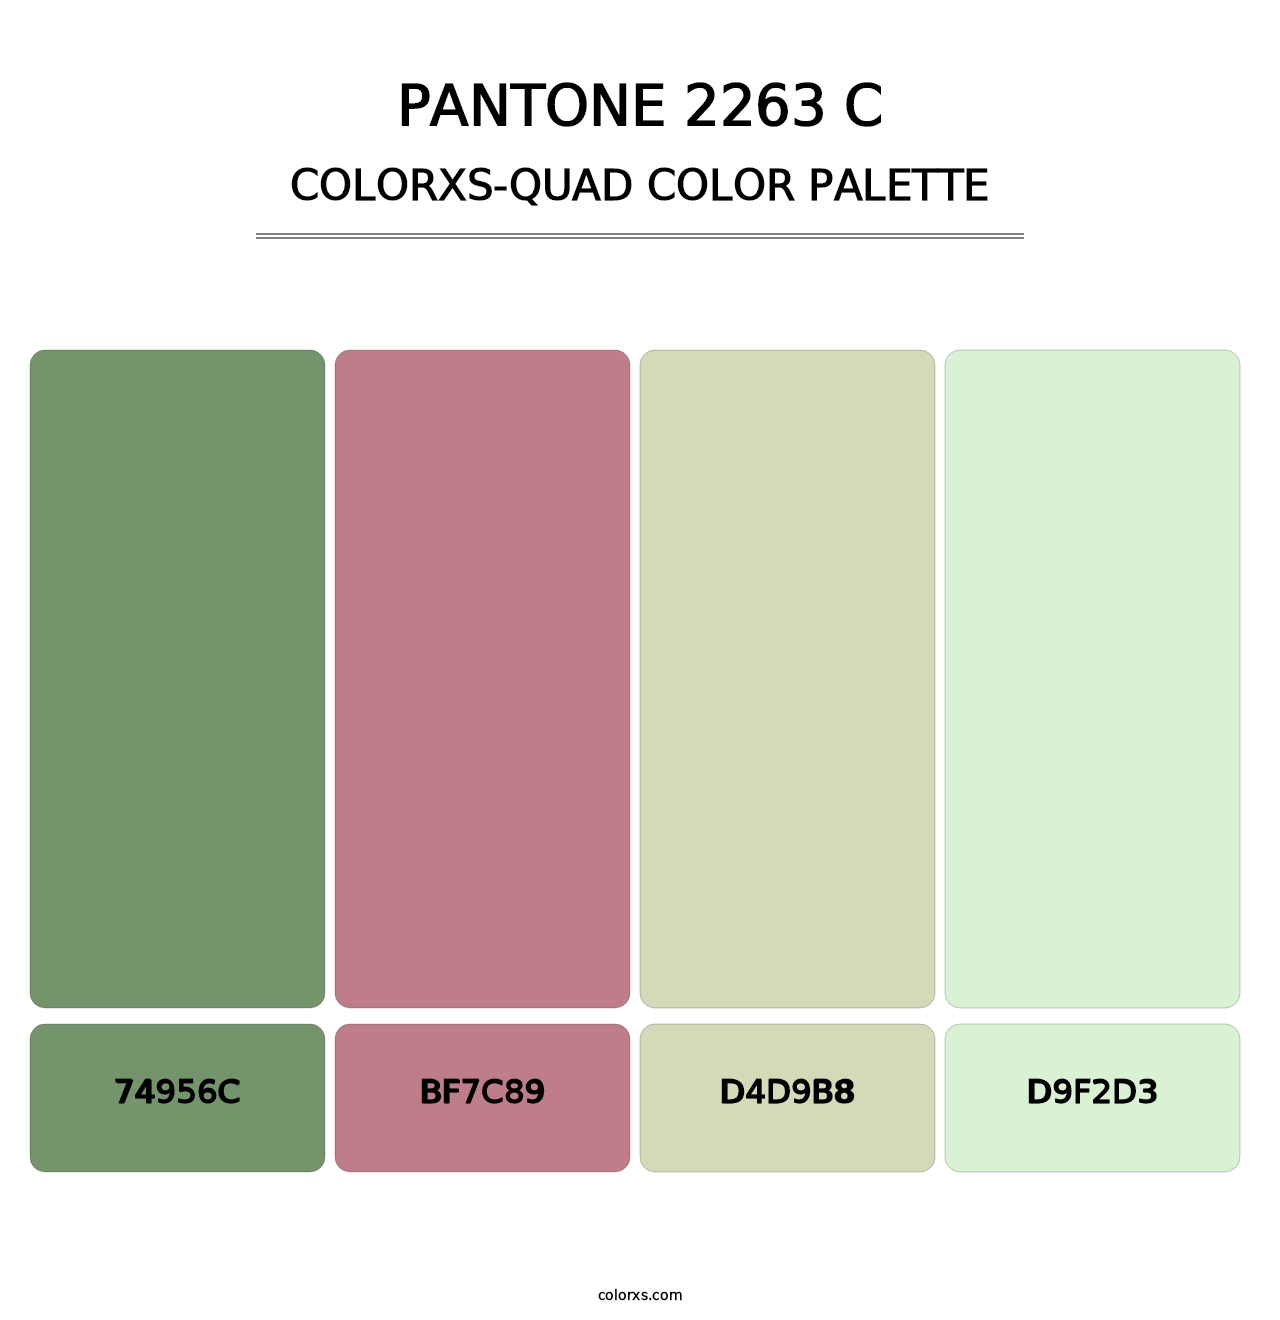 PANTONE 2263 C - Colorxs Quad Palette